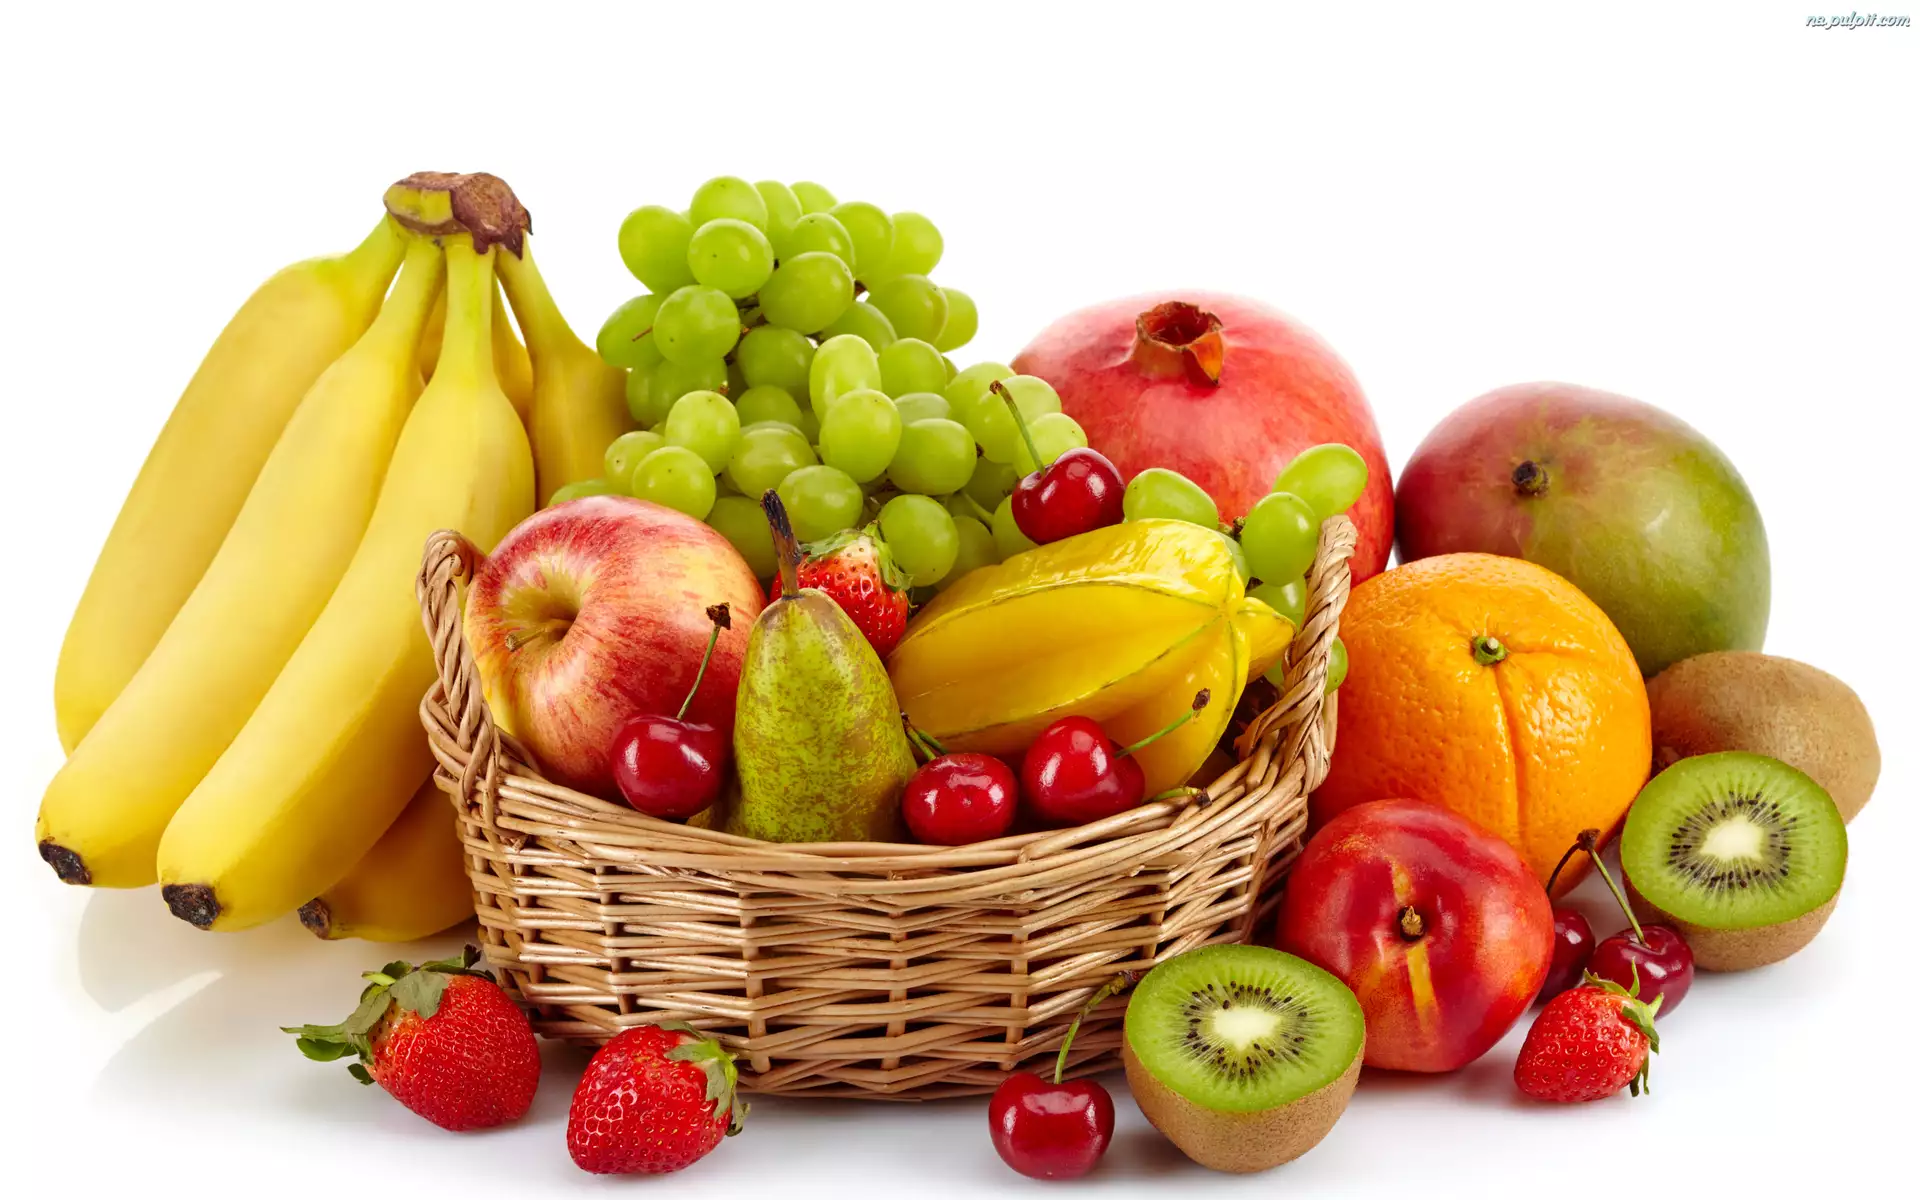 Banany, Owoce, Kiwi, Koszyk, Winogrona, Jabłka